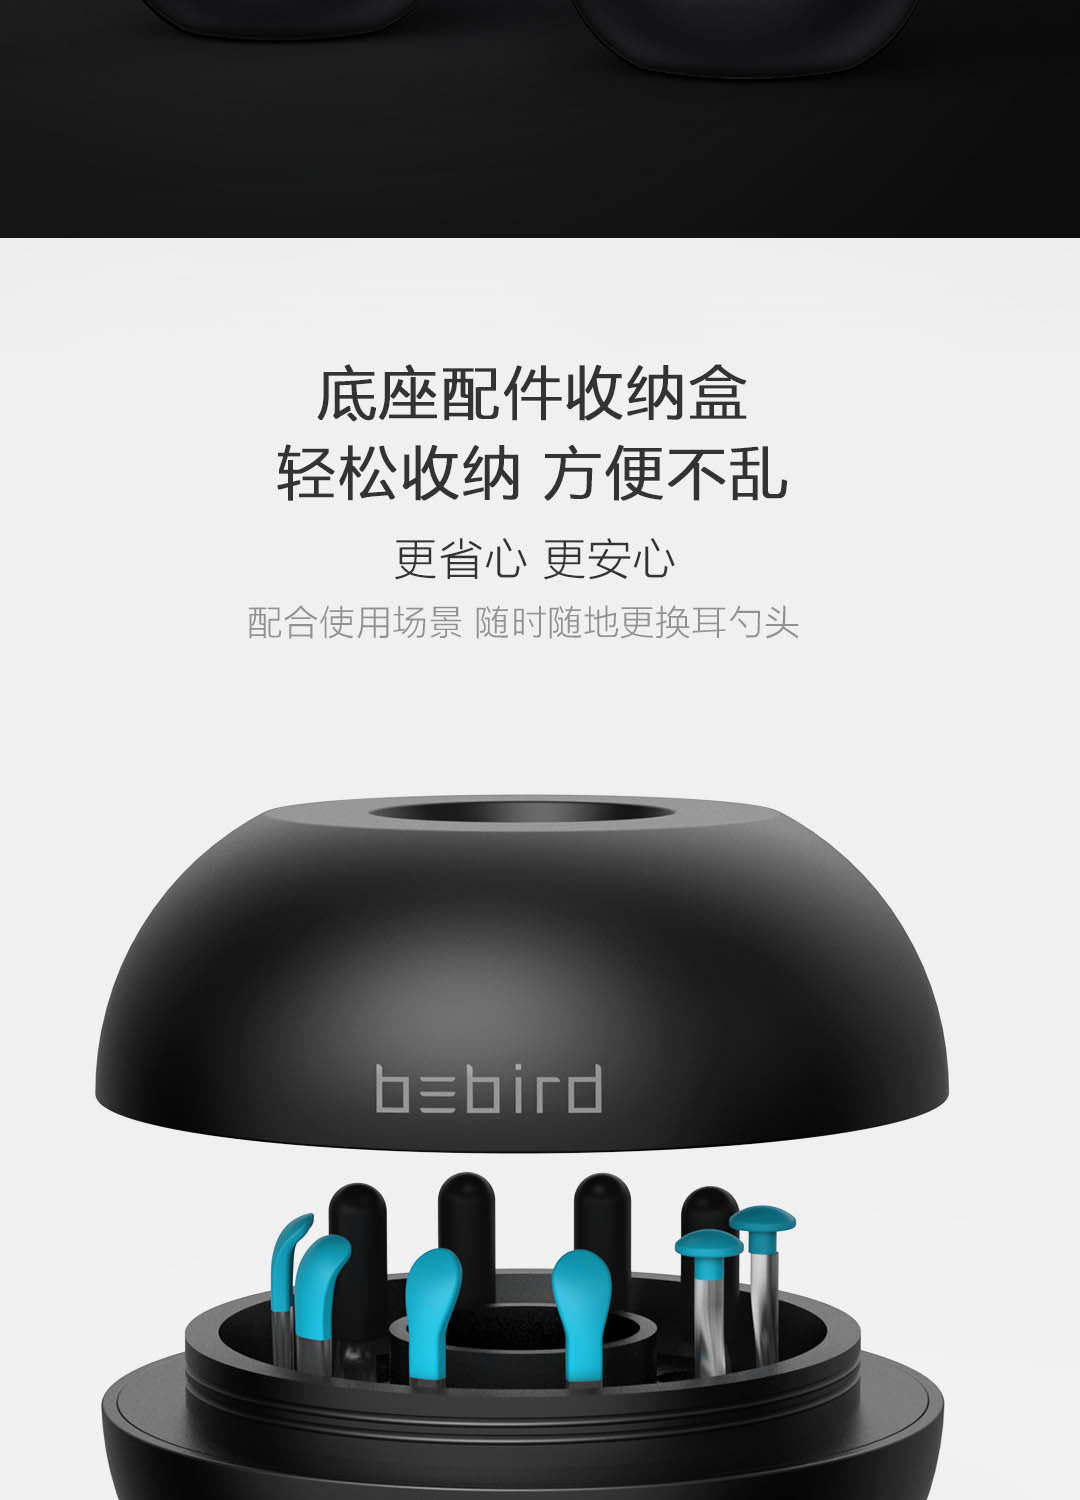 Bebird智能可视采耳棒M9 Pro